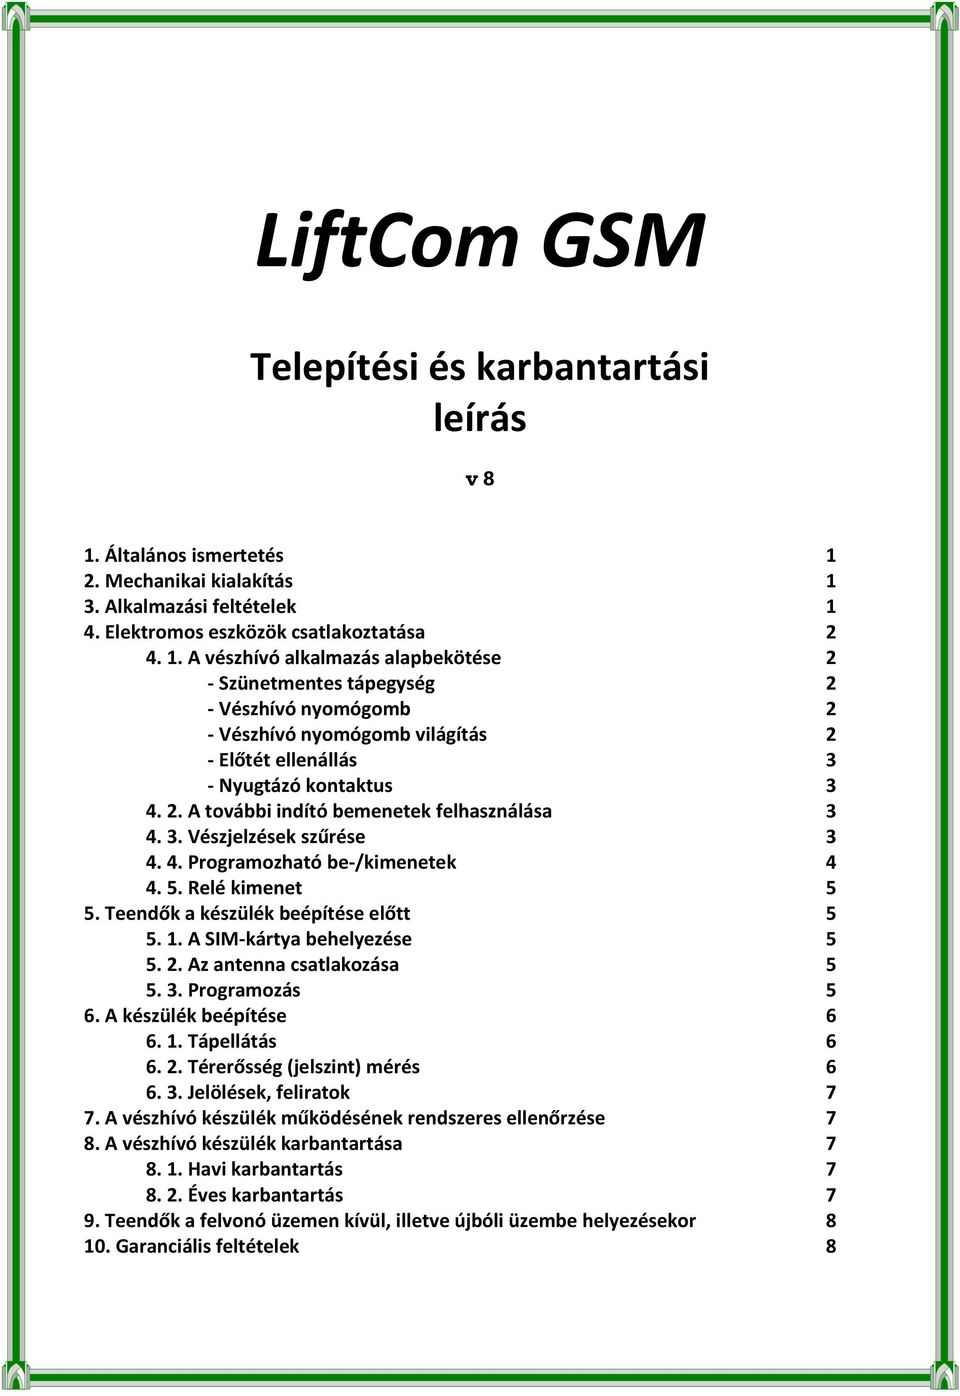 LiftCom GSM. Telepítési és karbantartási leírás. v 8 - PDF Ingyenes letöltés